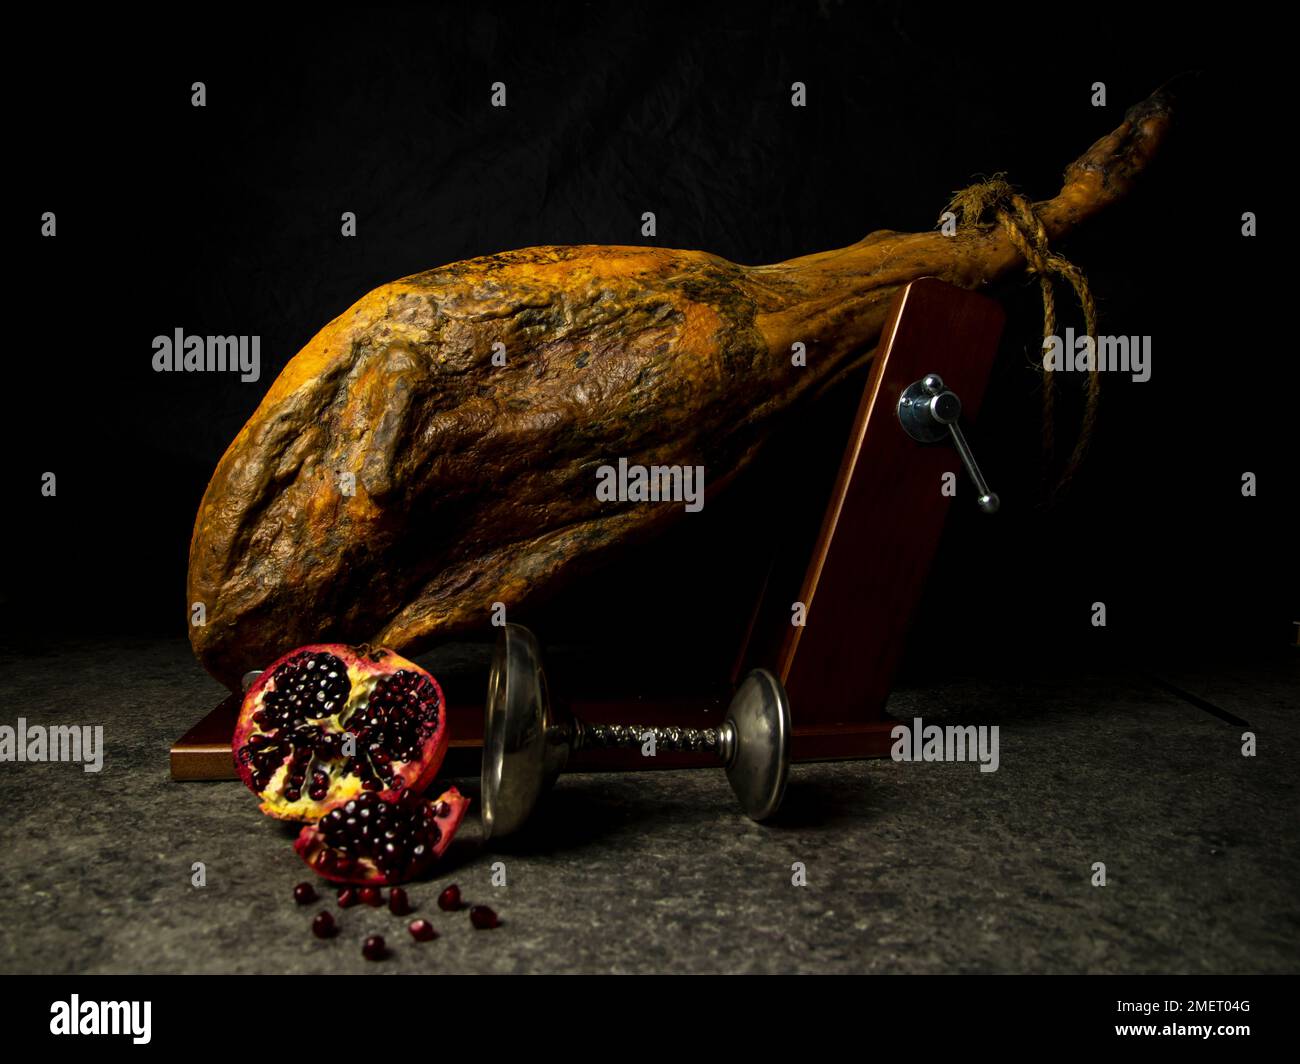 whole leg of jamon with pomegranate on black background Stock Photo